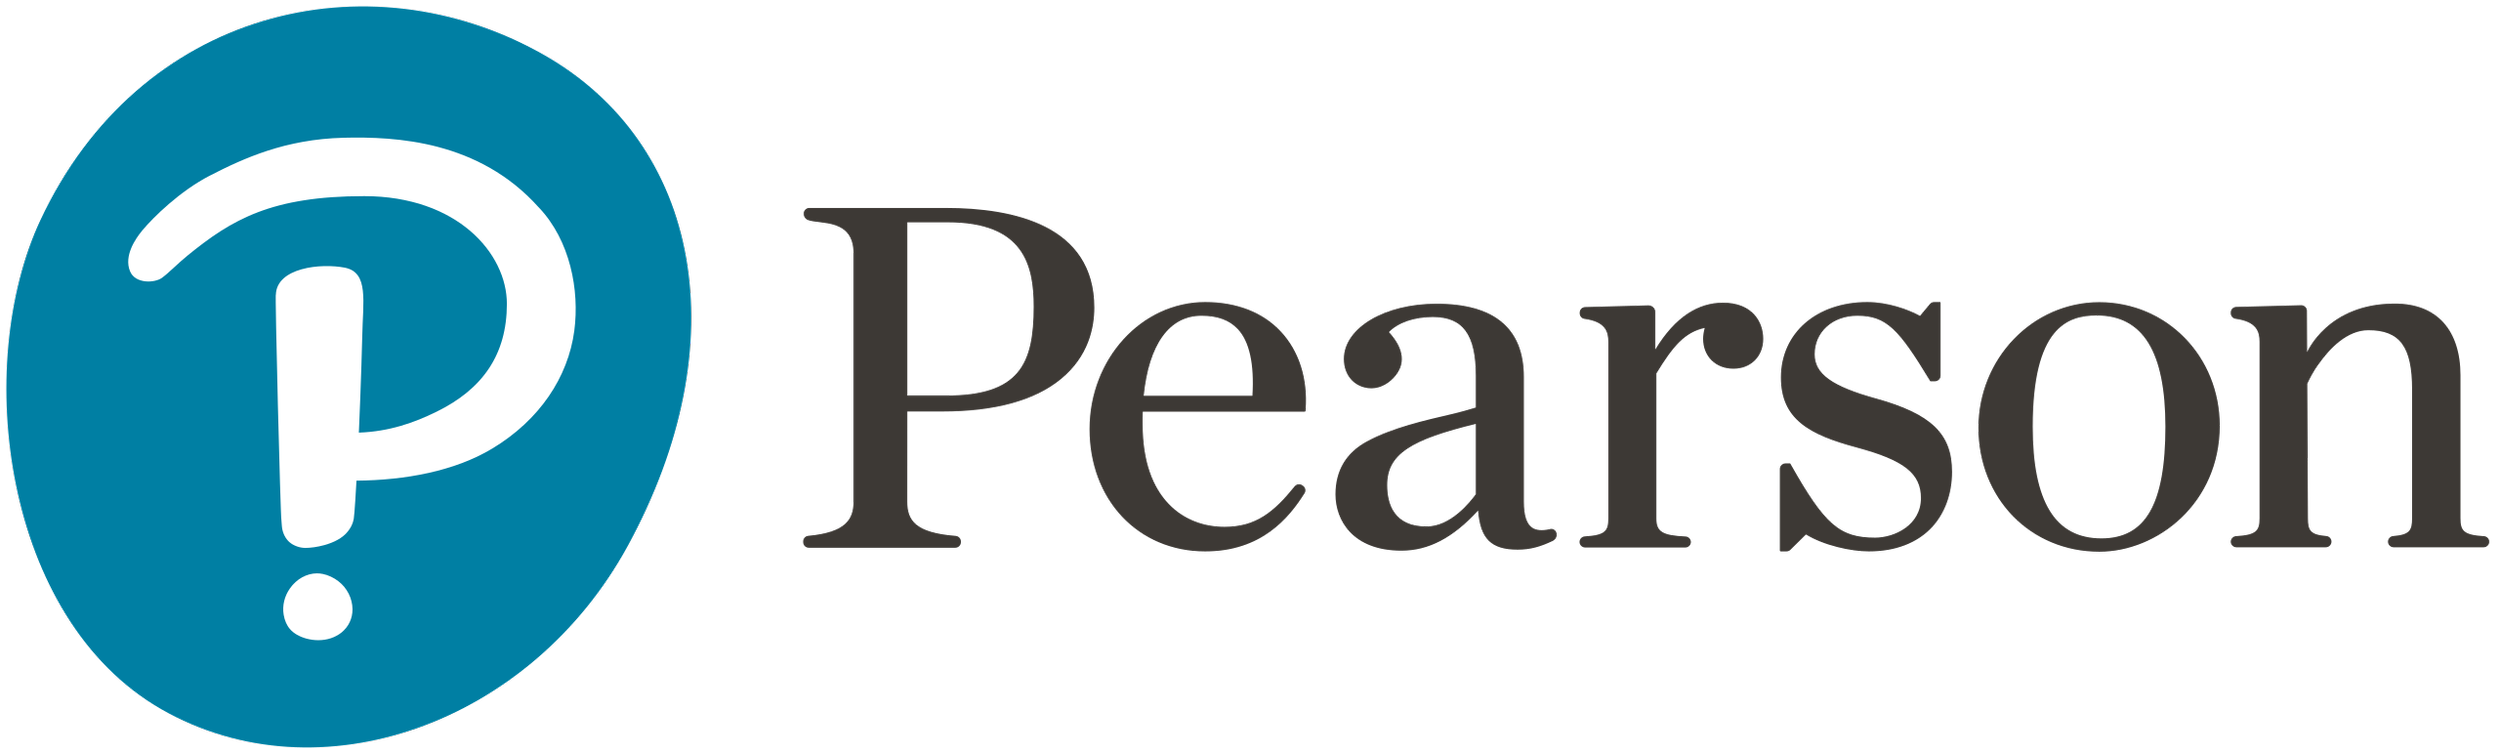 Pearson - create new possibilities